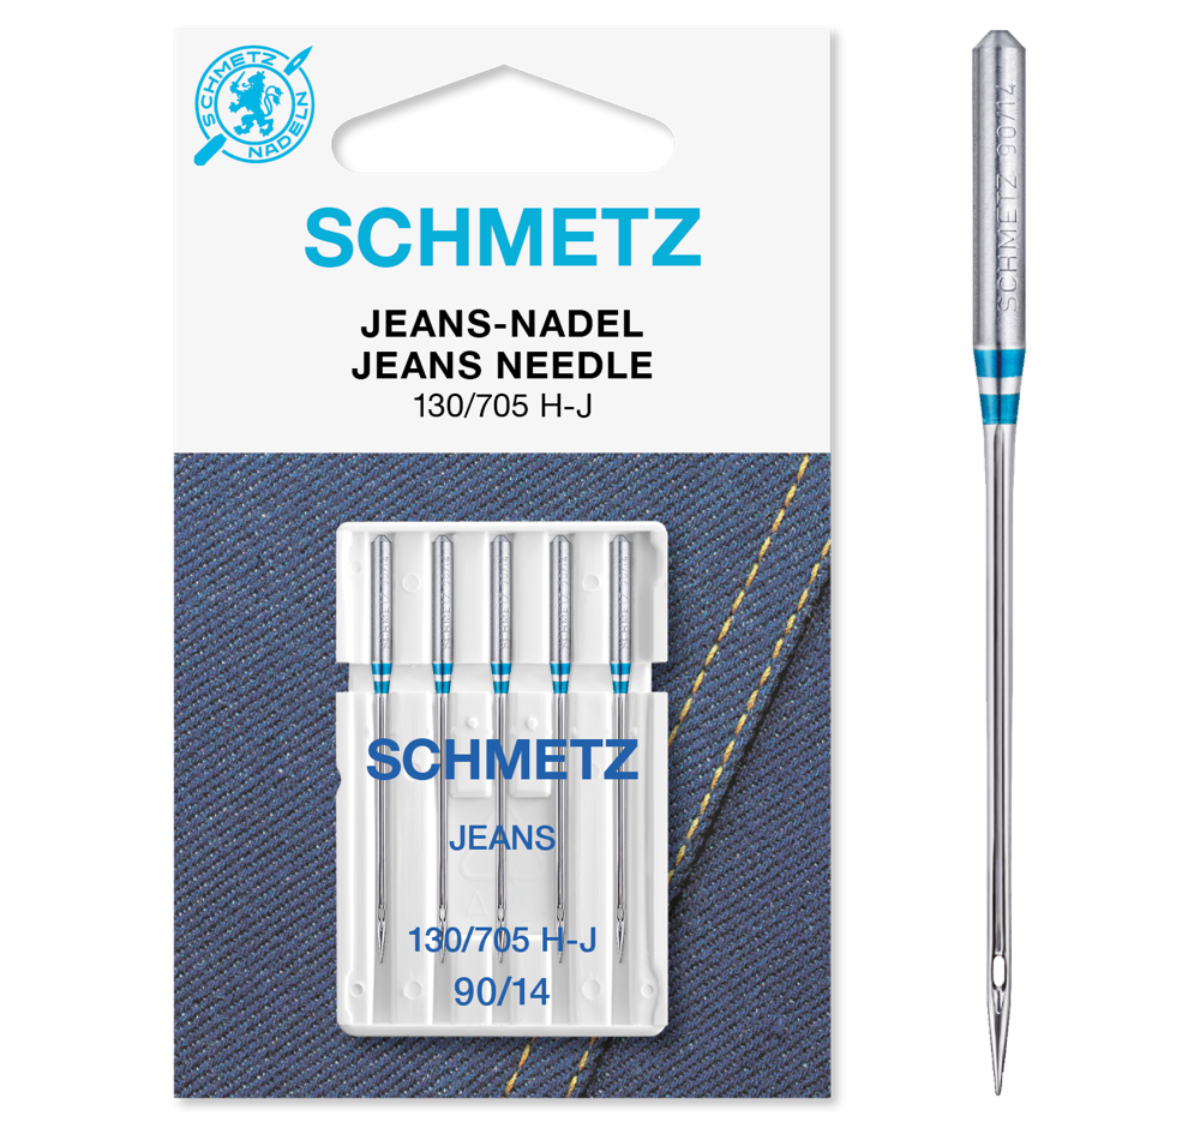 Schmetz Jeans/Denim Sewing Machine Needles 5-Pack